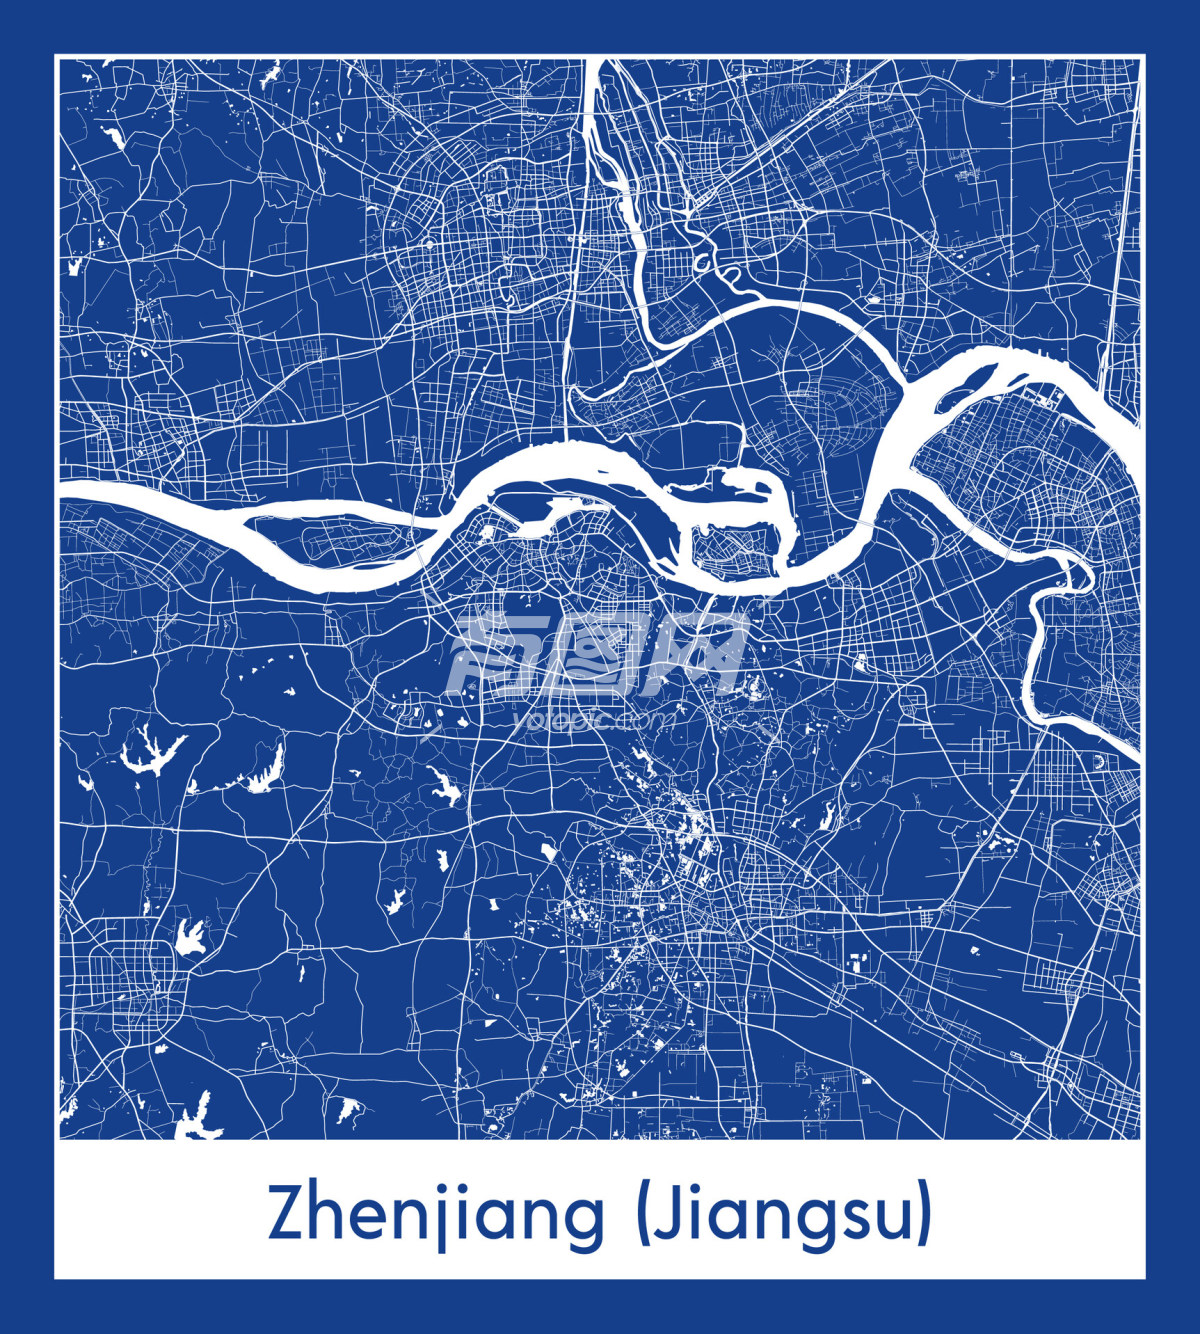 镇江市地图